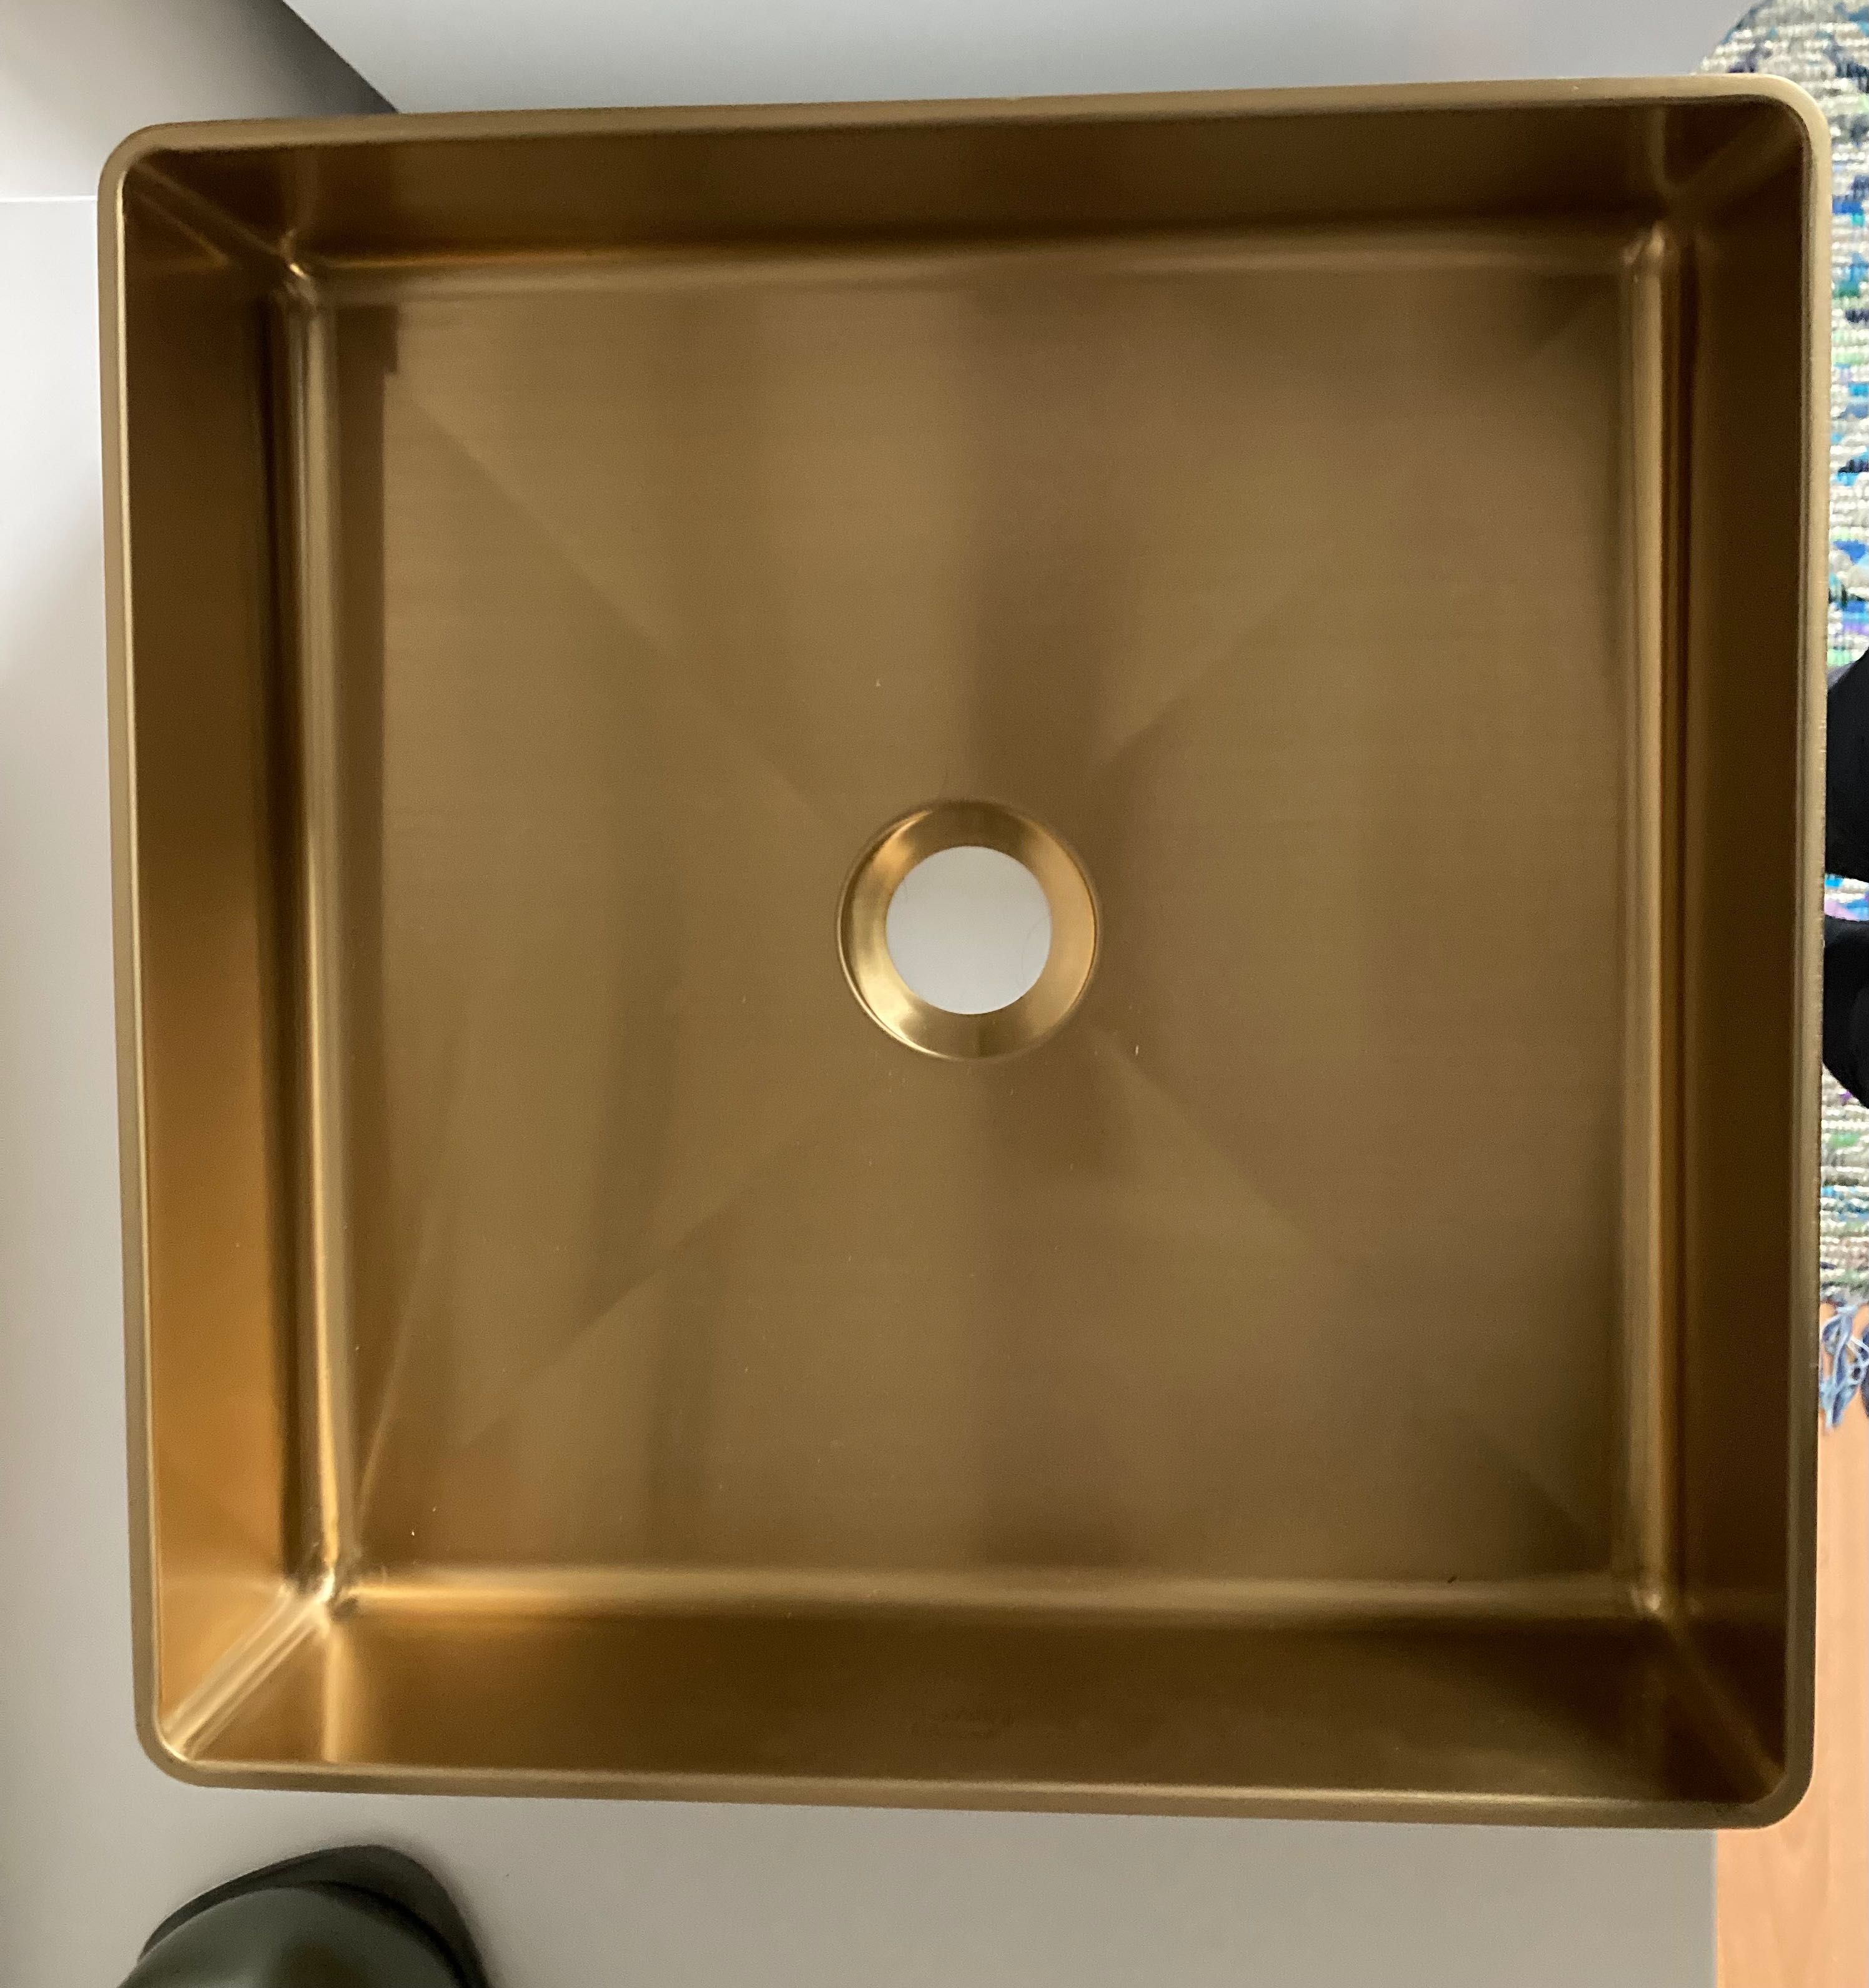 Stalowa umywalka złota Laveo Pola 36 cm